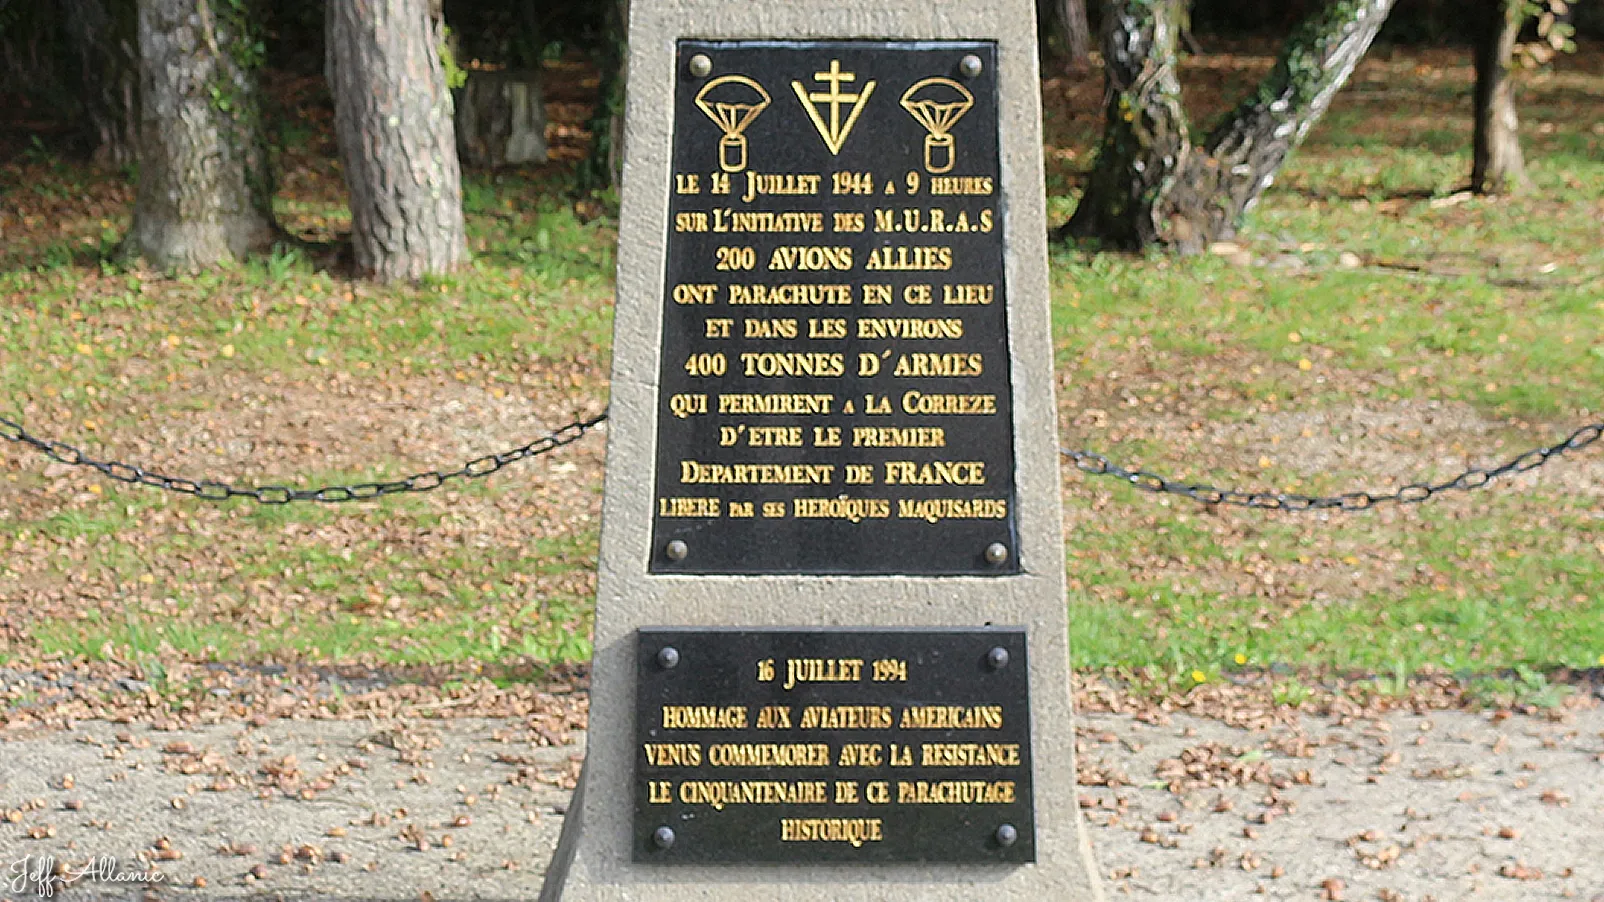 Corrèze découverte - Photo N° 2 - Le monument de la résistance à Saint-Hilaire-Taurieux - 19400 - Saint-Hilaire-Taurieux -  - 